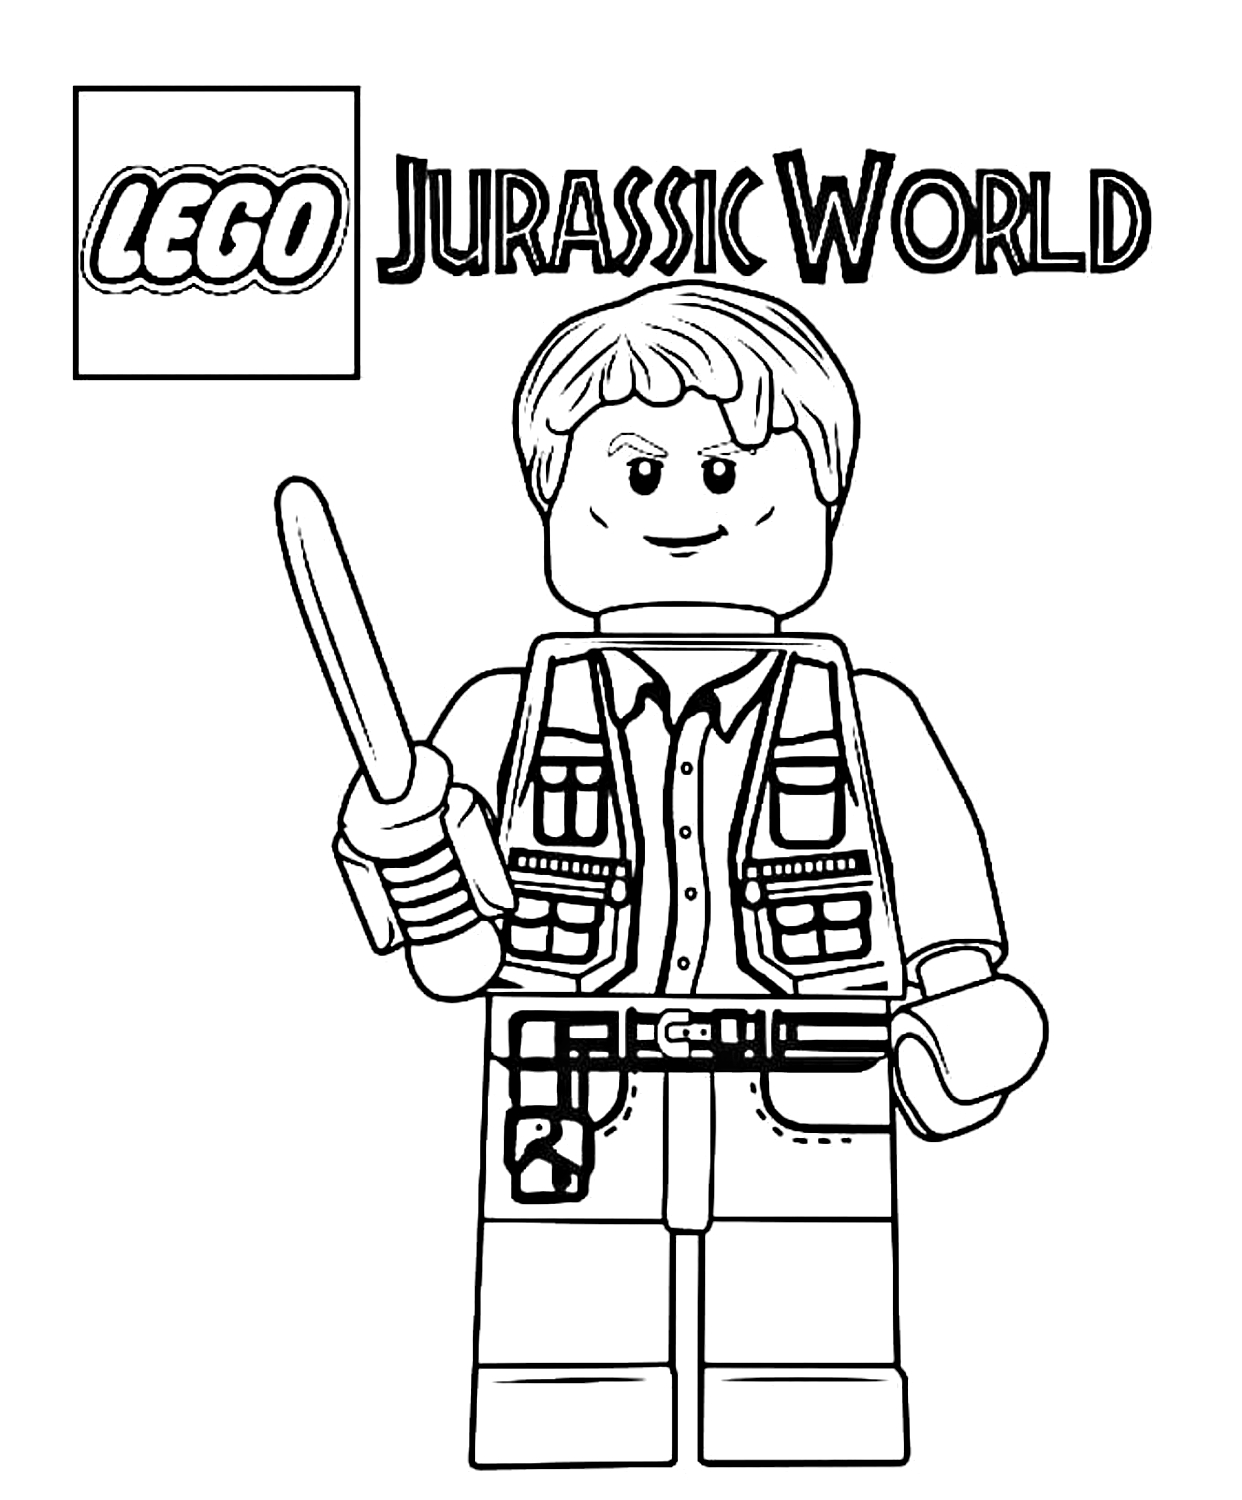 Dibujo 15 de Jurassic World para imprimir y colorear